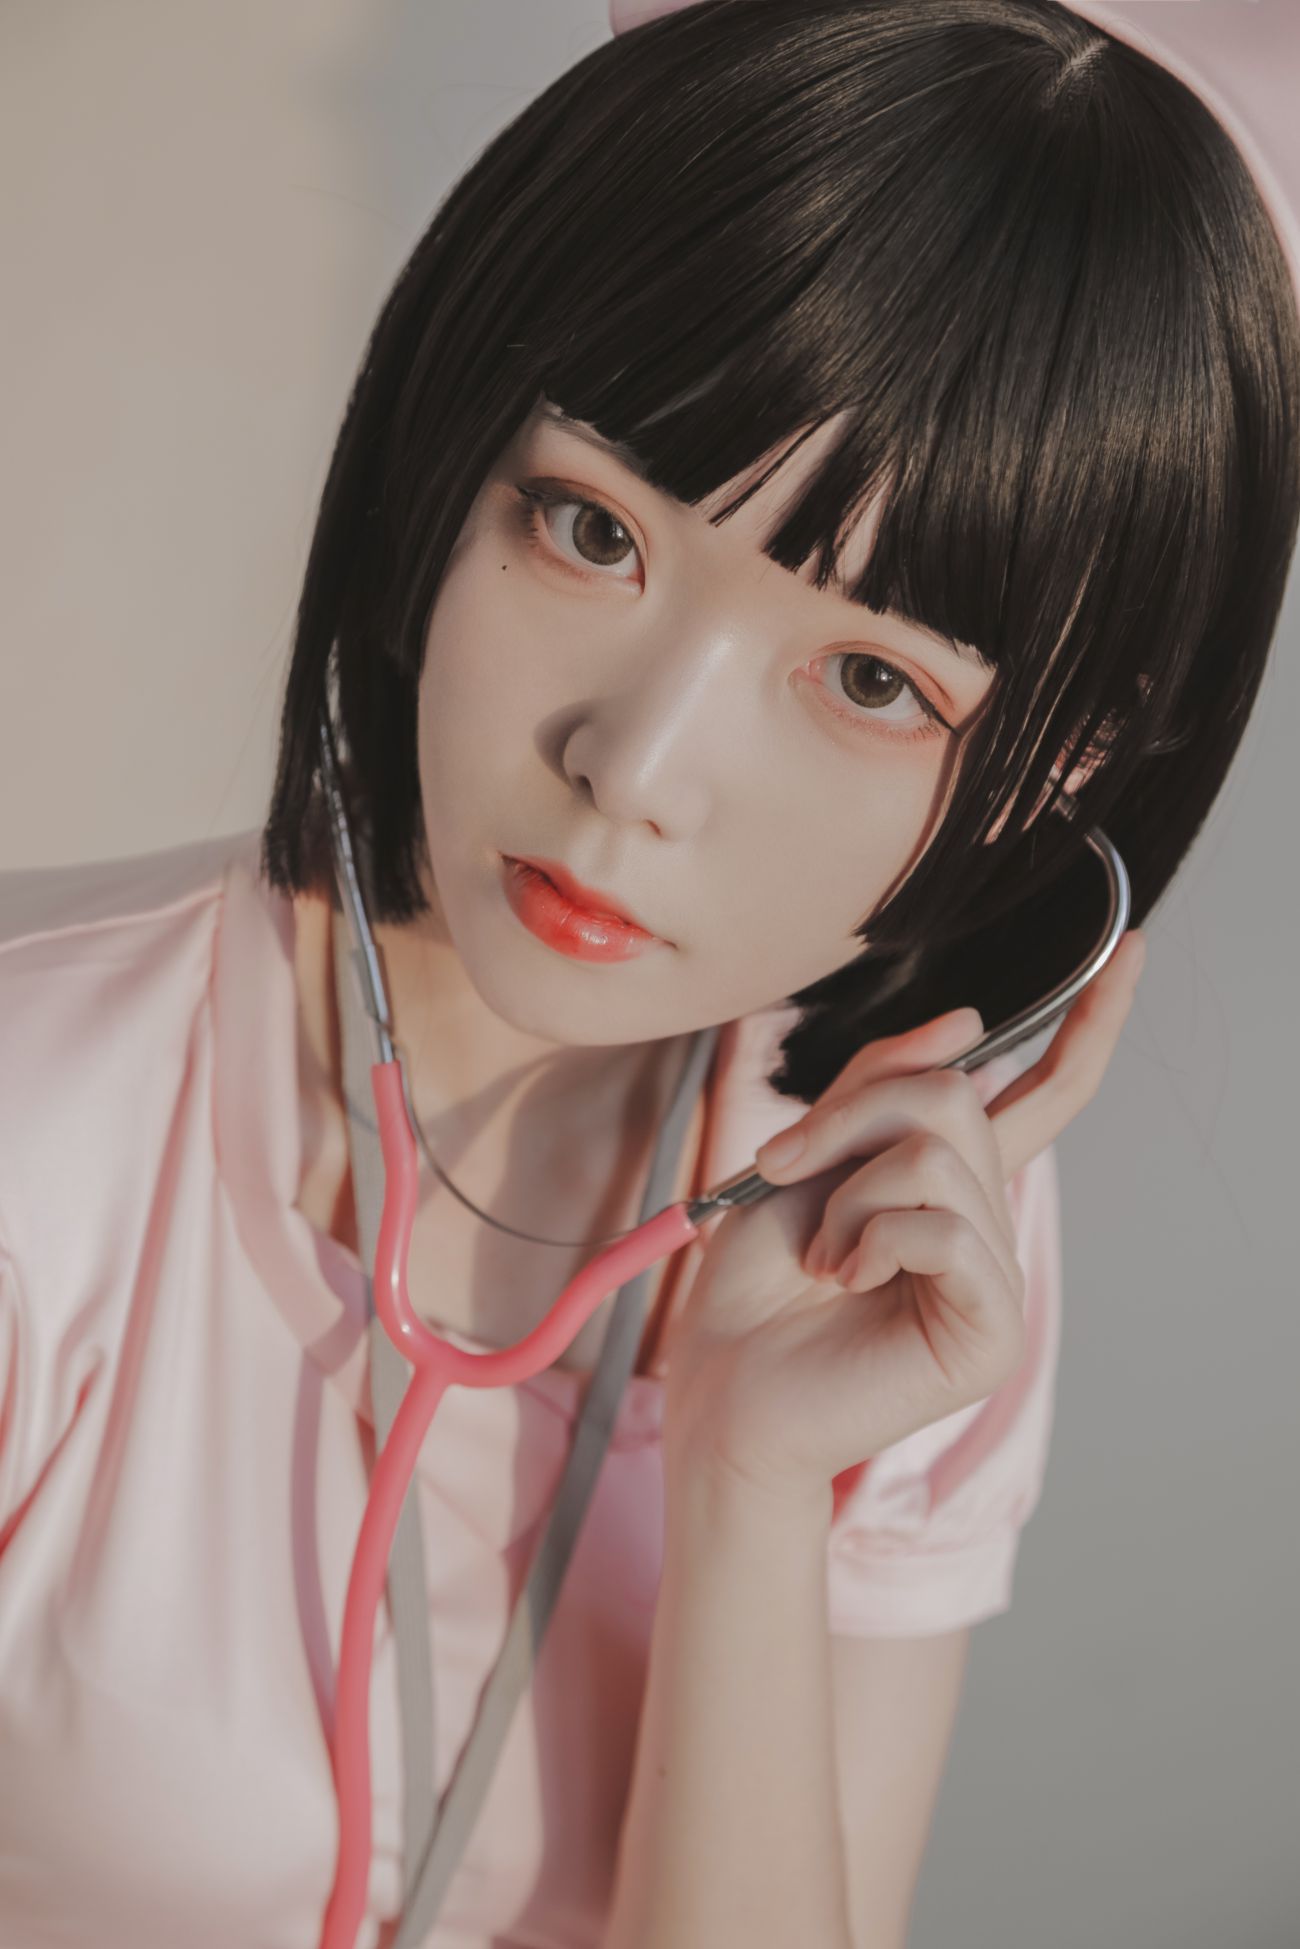 微博美少女Fushii海堂Cosplay性感写真护士 (16)